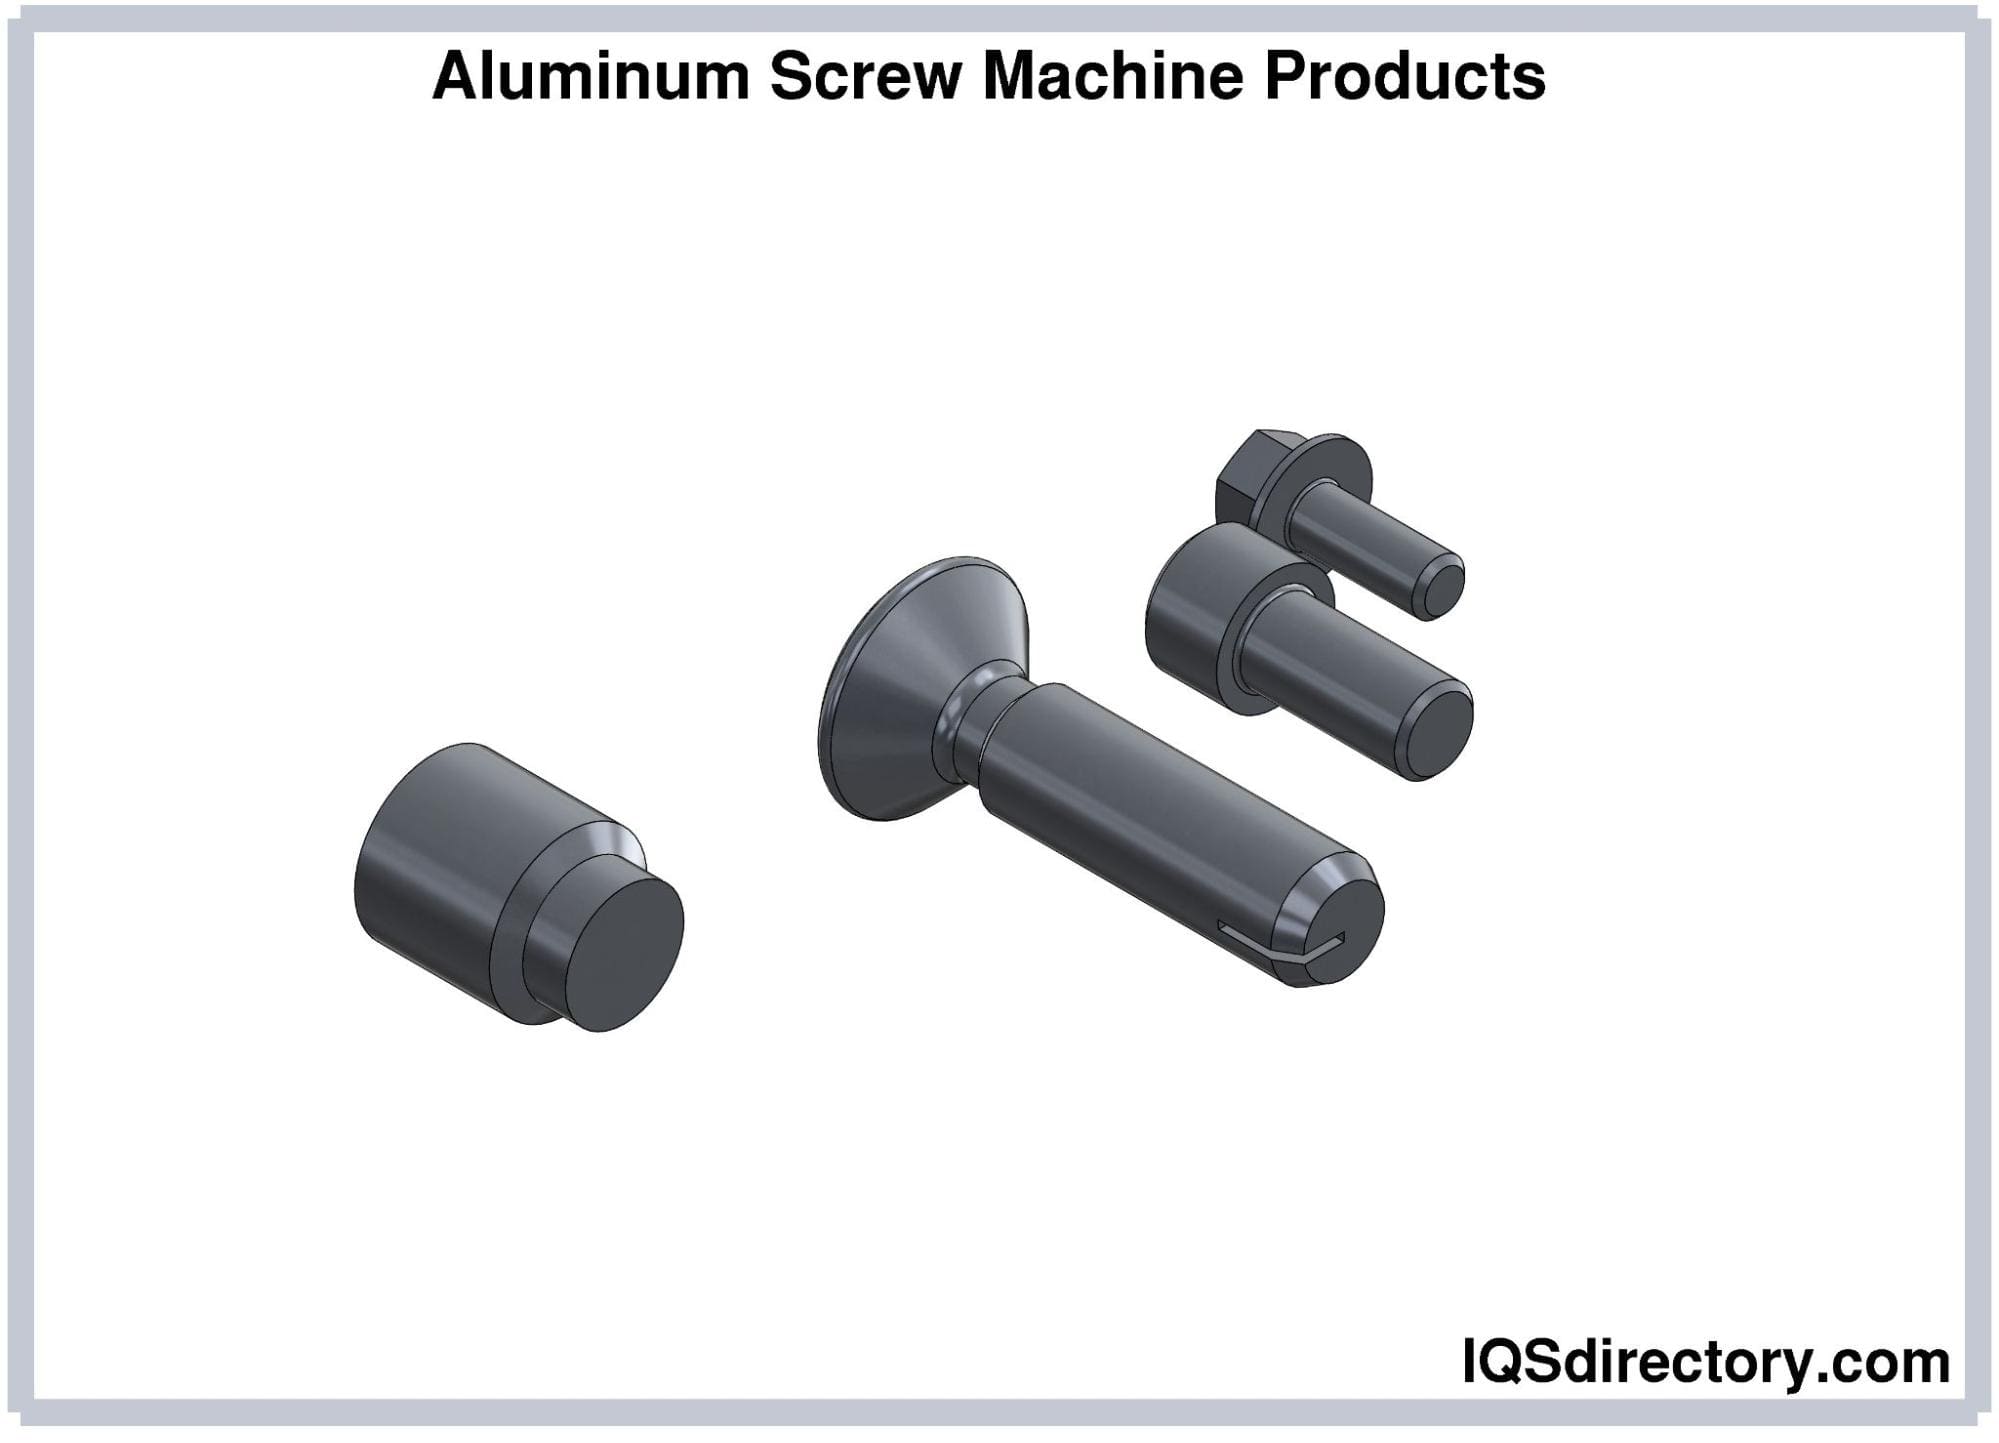 Aluminum Screw Machine Products